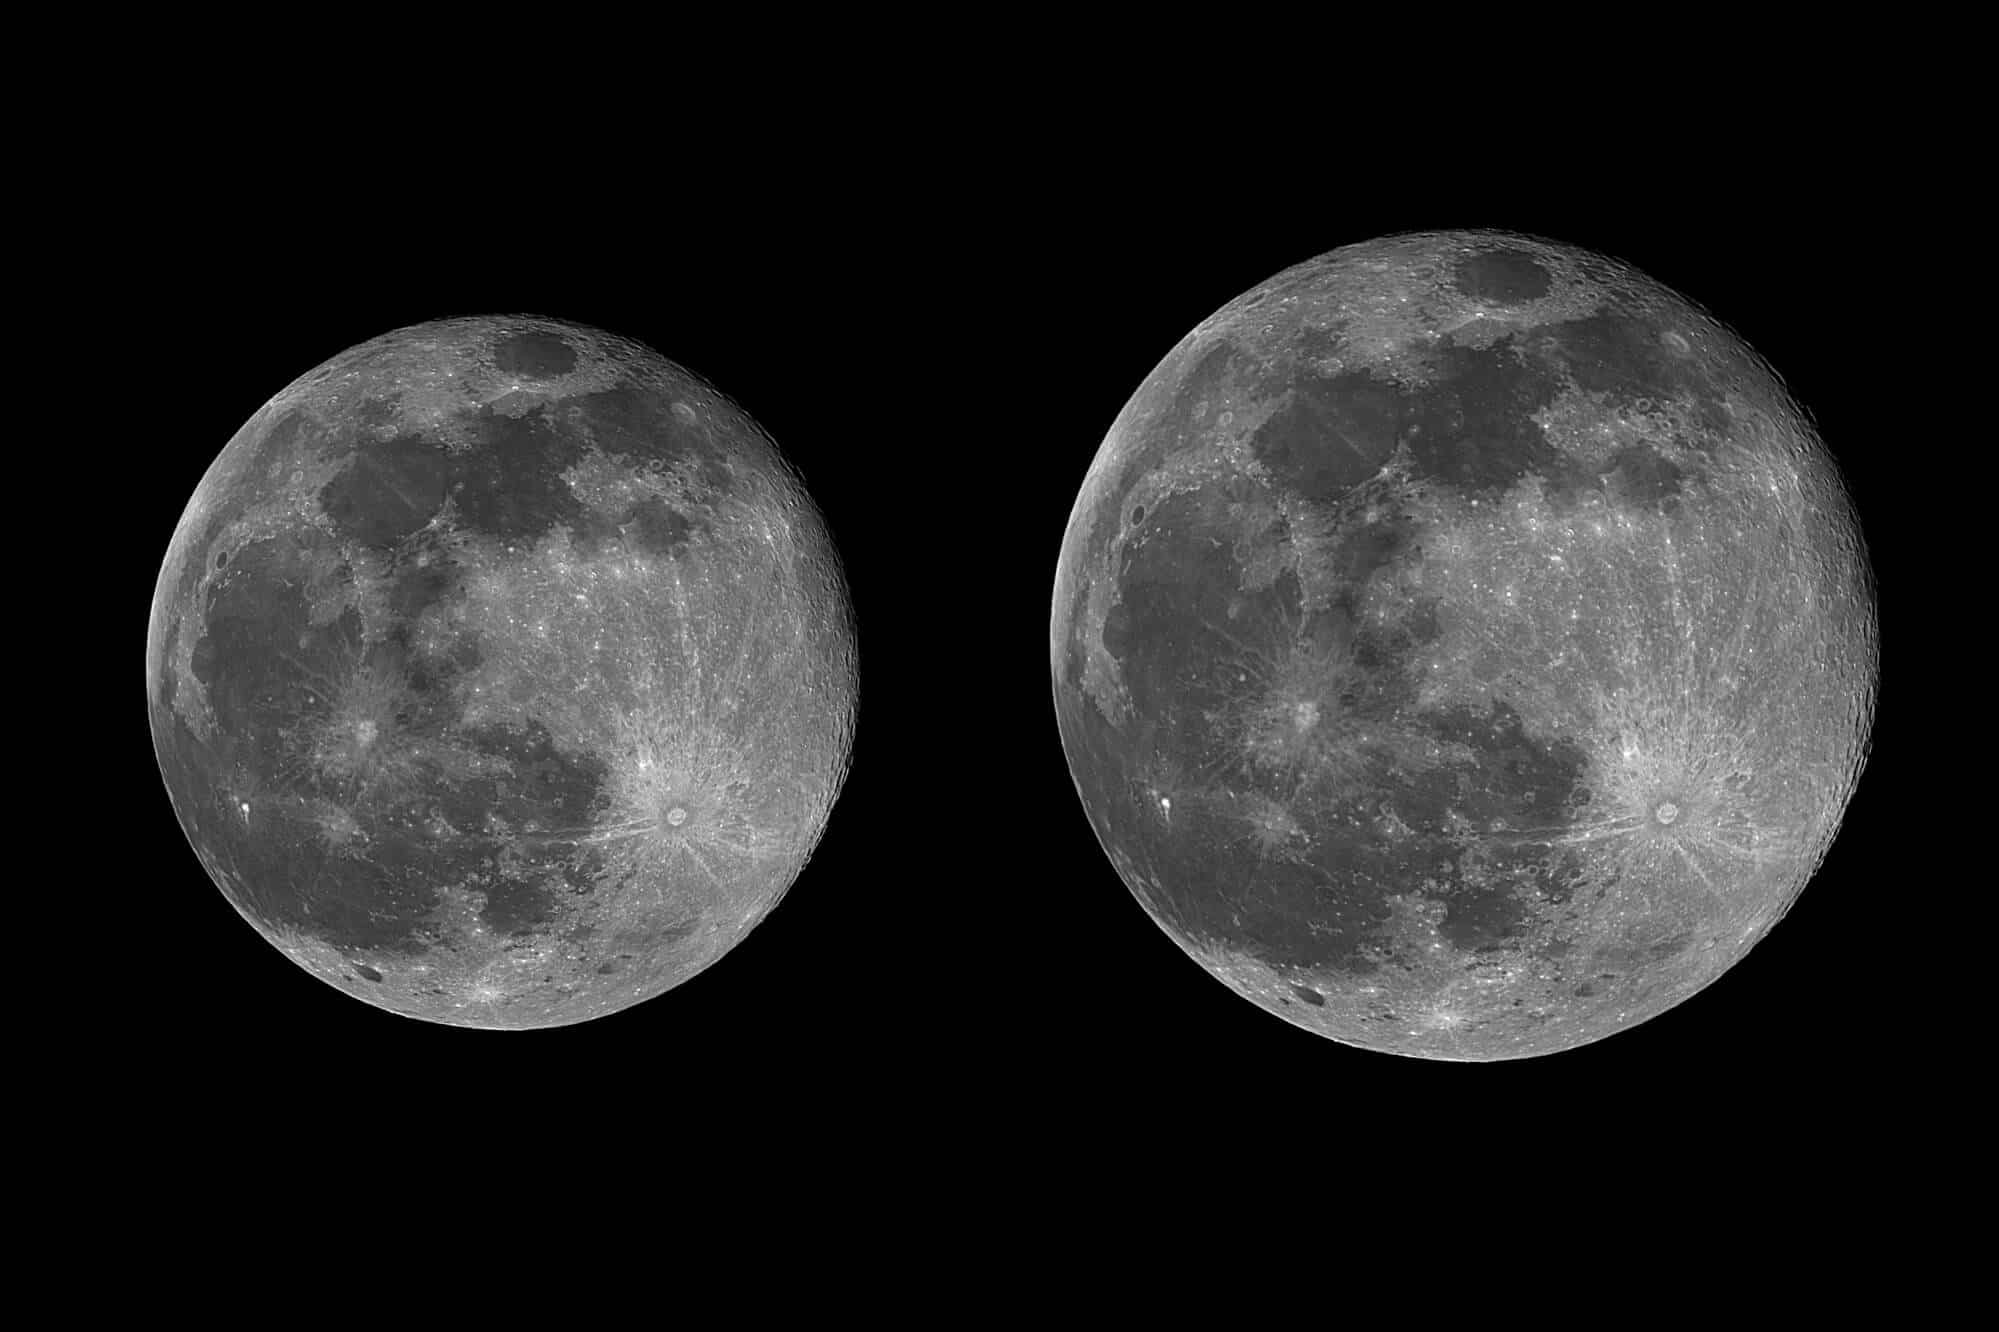 הירח המלא שצולO בטלסקופ כשהוא נמצא בקרבה הגדולה ביותר (גדול יותר ב -14%) ירח מלא שנמצא בקרבה הגדולה ביותר נקרא ירח-על (סופר מון) <a href="https://depositphotos.com. ">צילום: depositphotos.com</a>